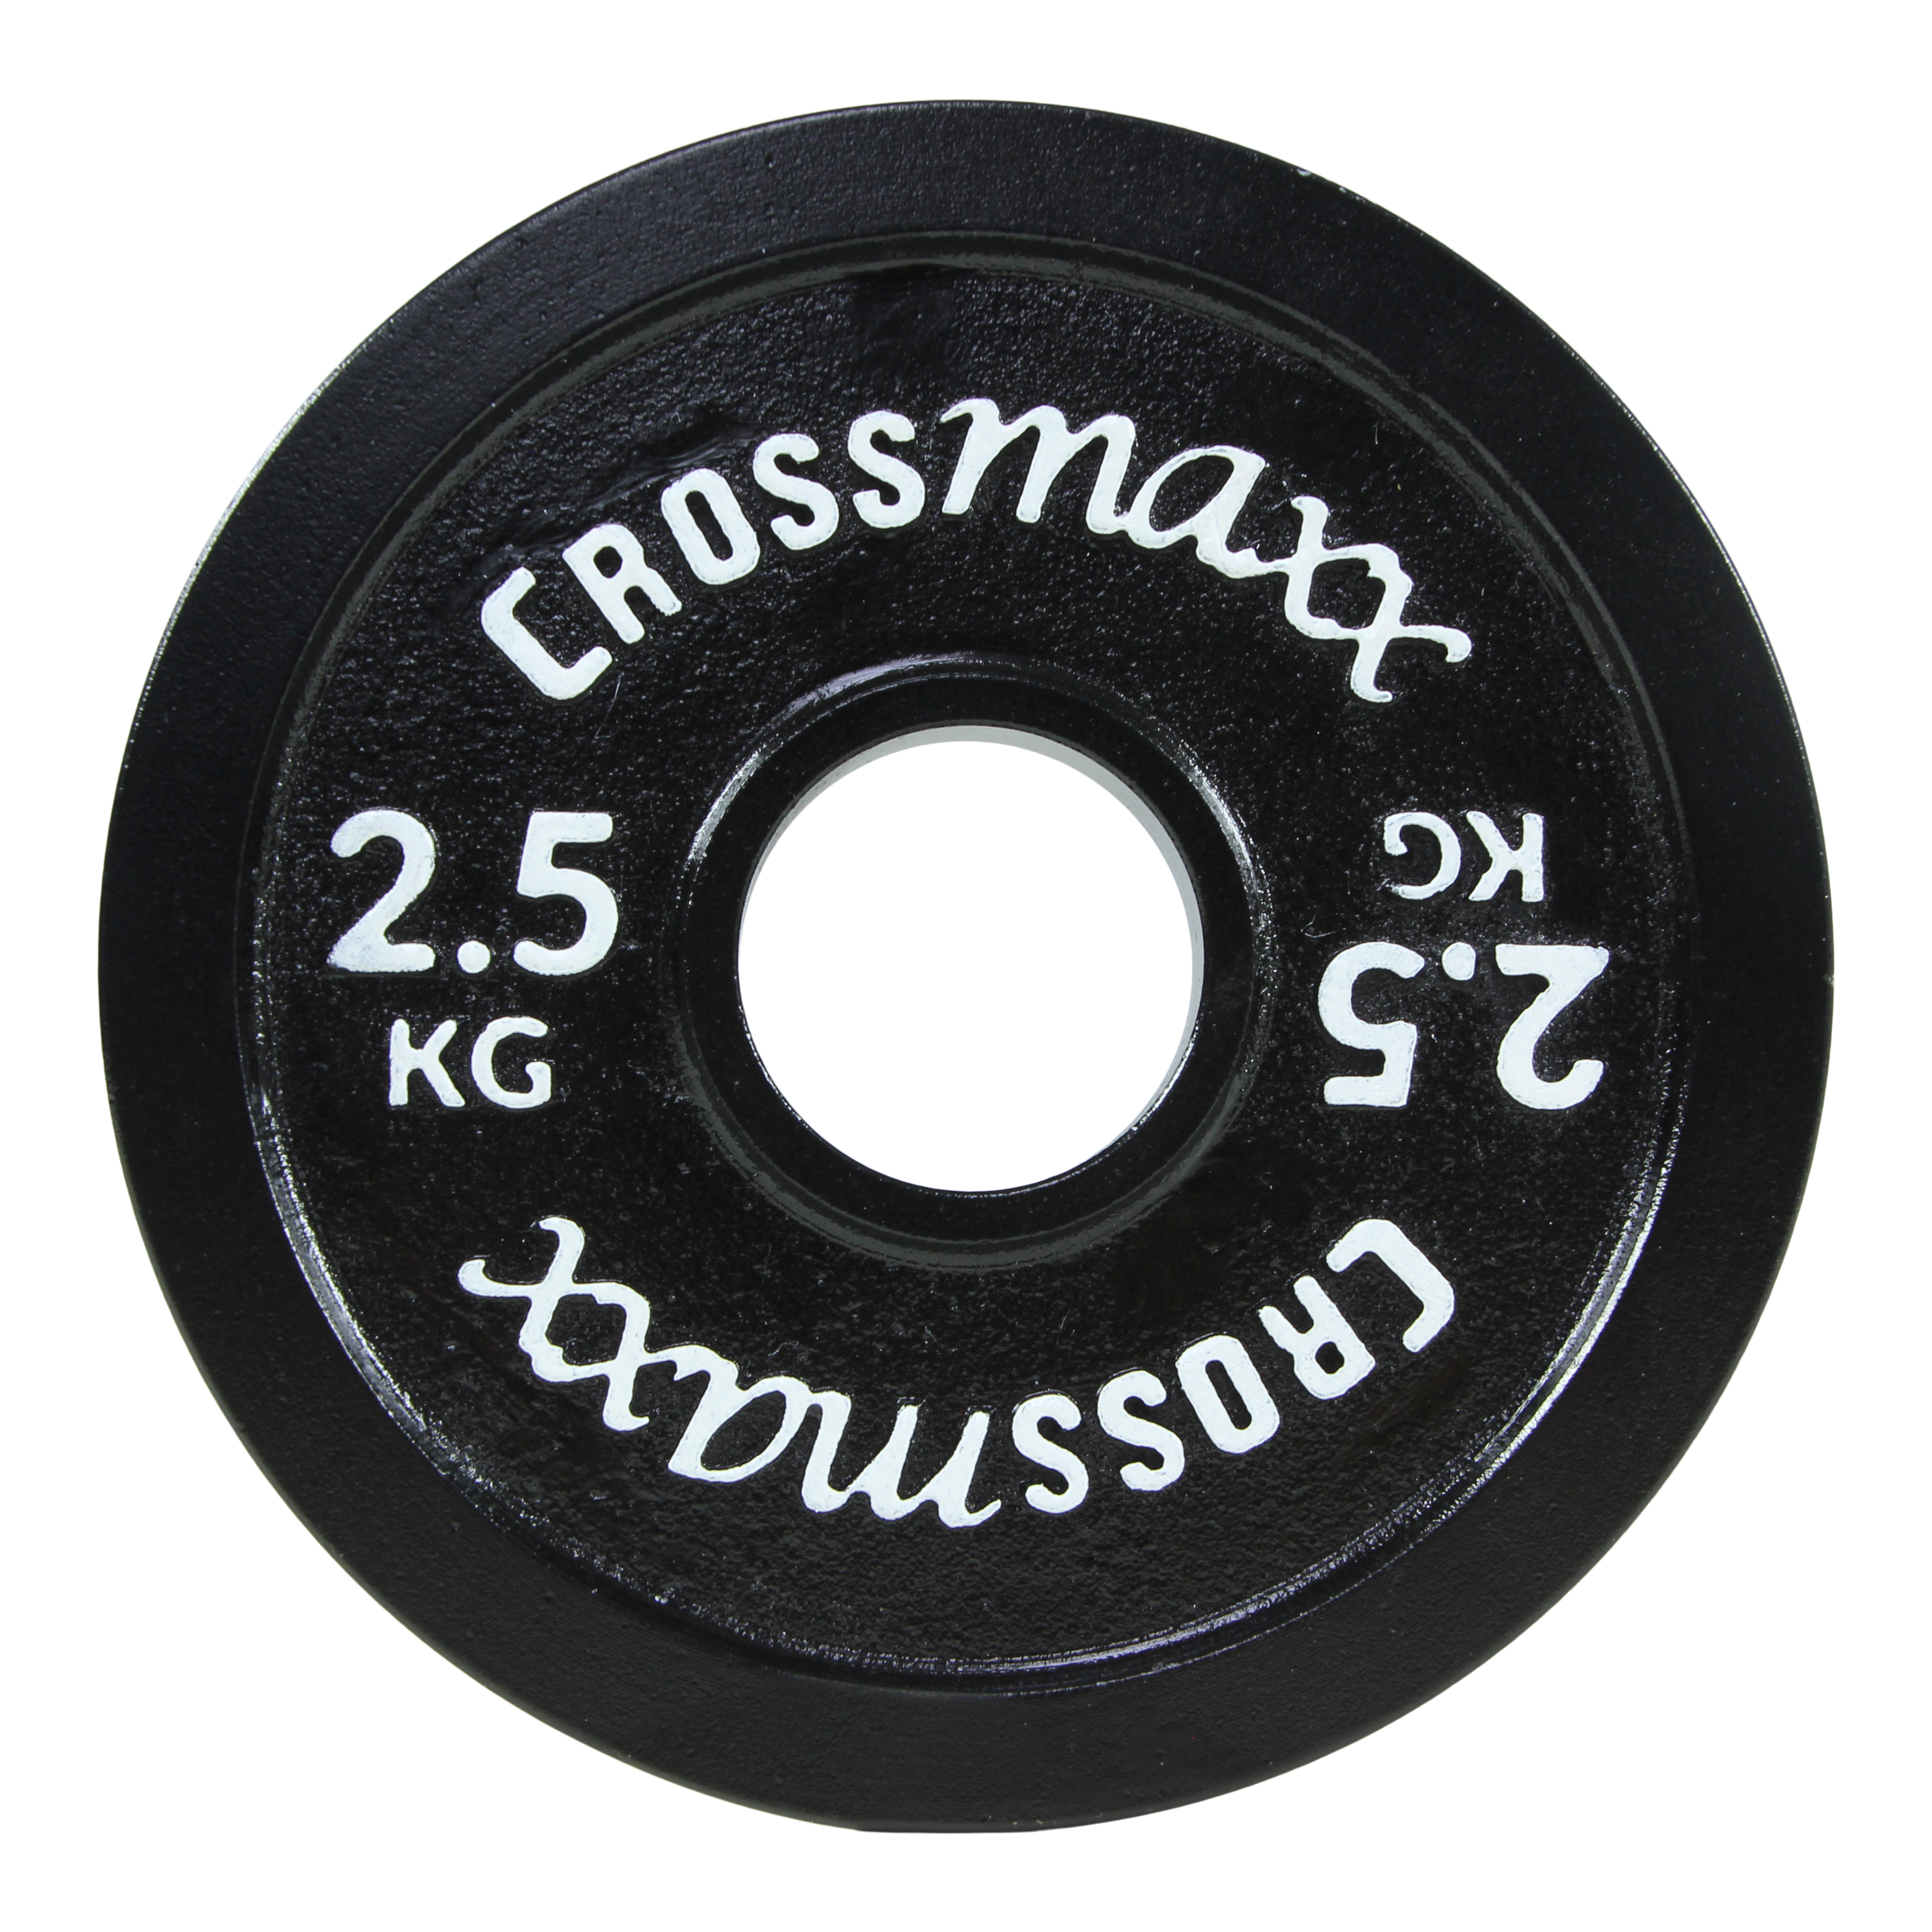 Crossmaxx kalibreret vægtskive 2,5 kg i støbejern til styrkeløft – sort